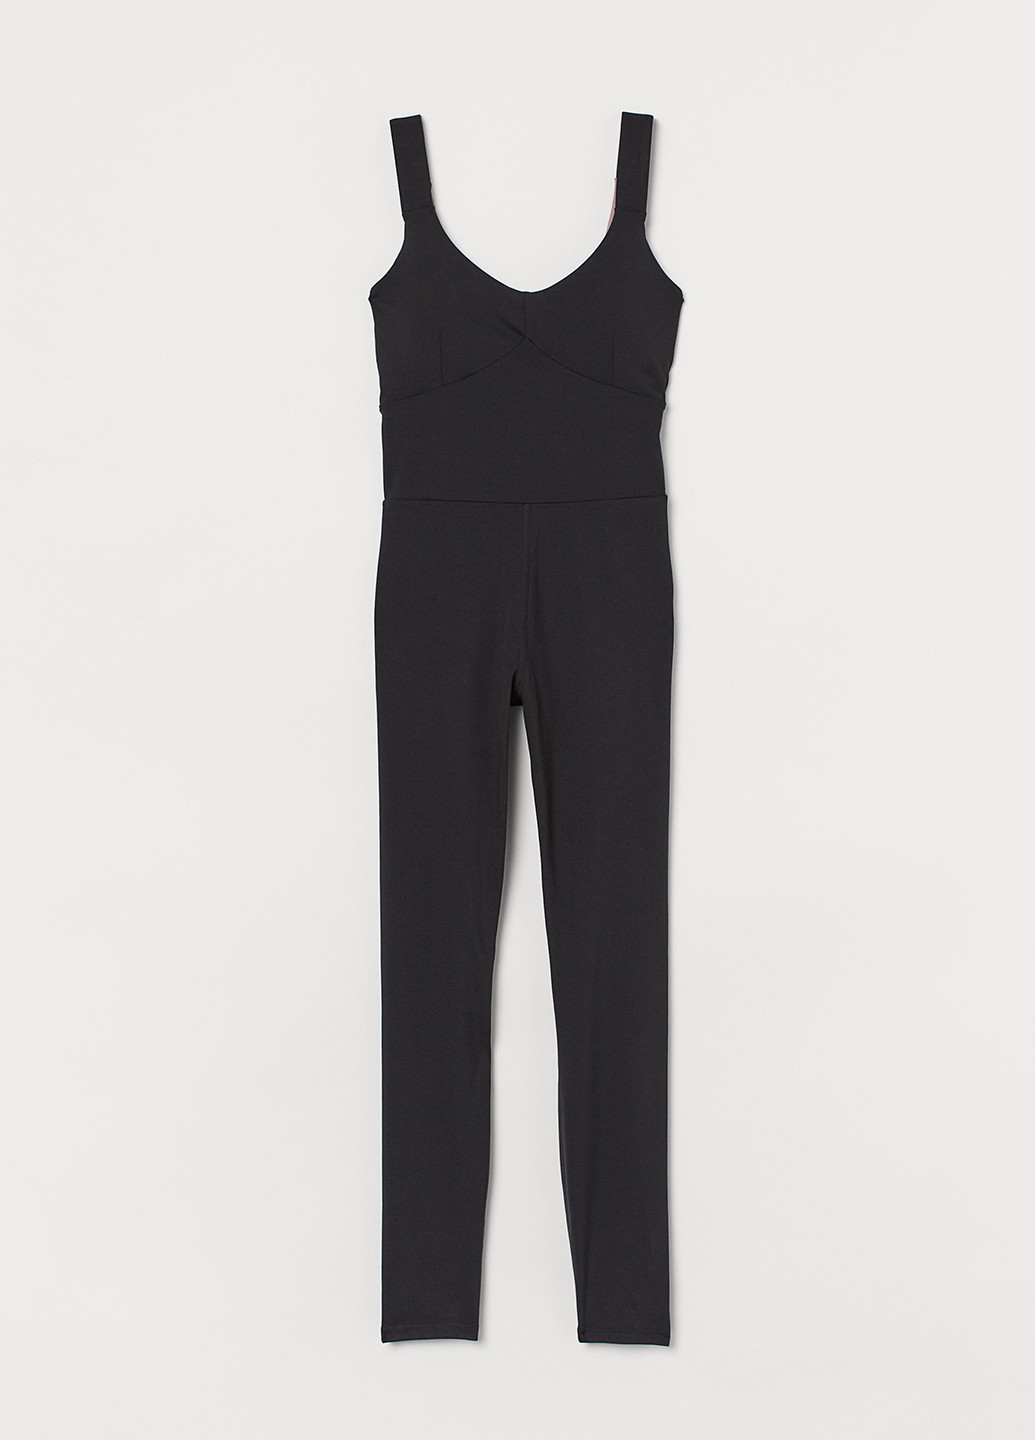 Комбінезон H&M комбінезон-брюки однотонний чорний спортивний поліестер